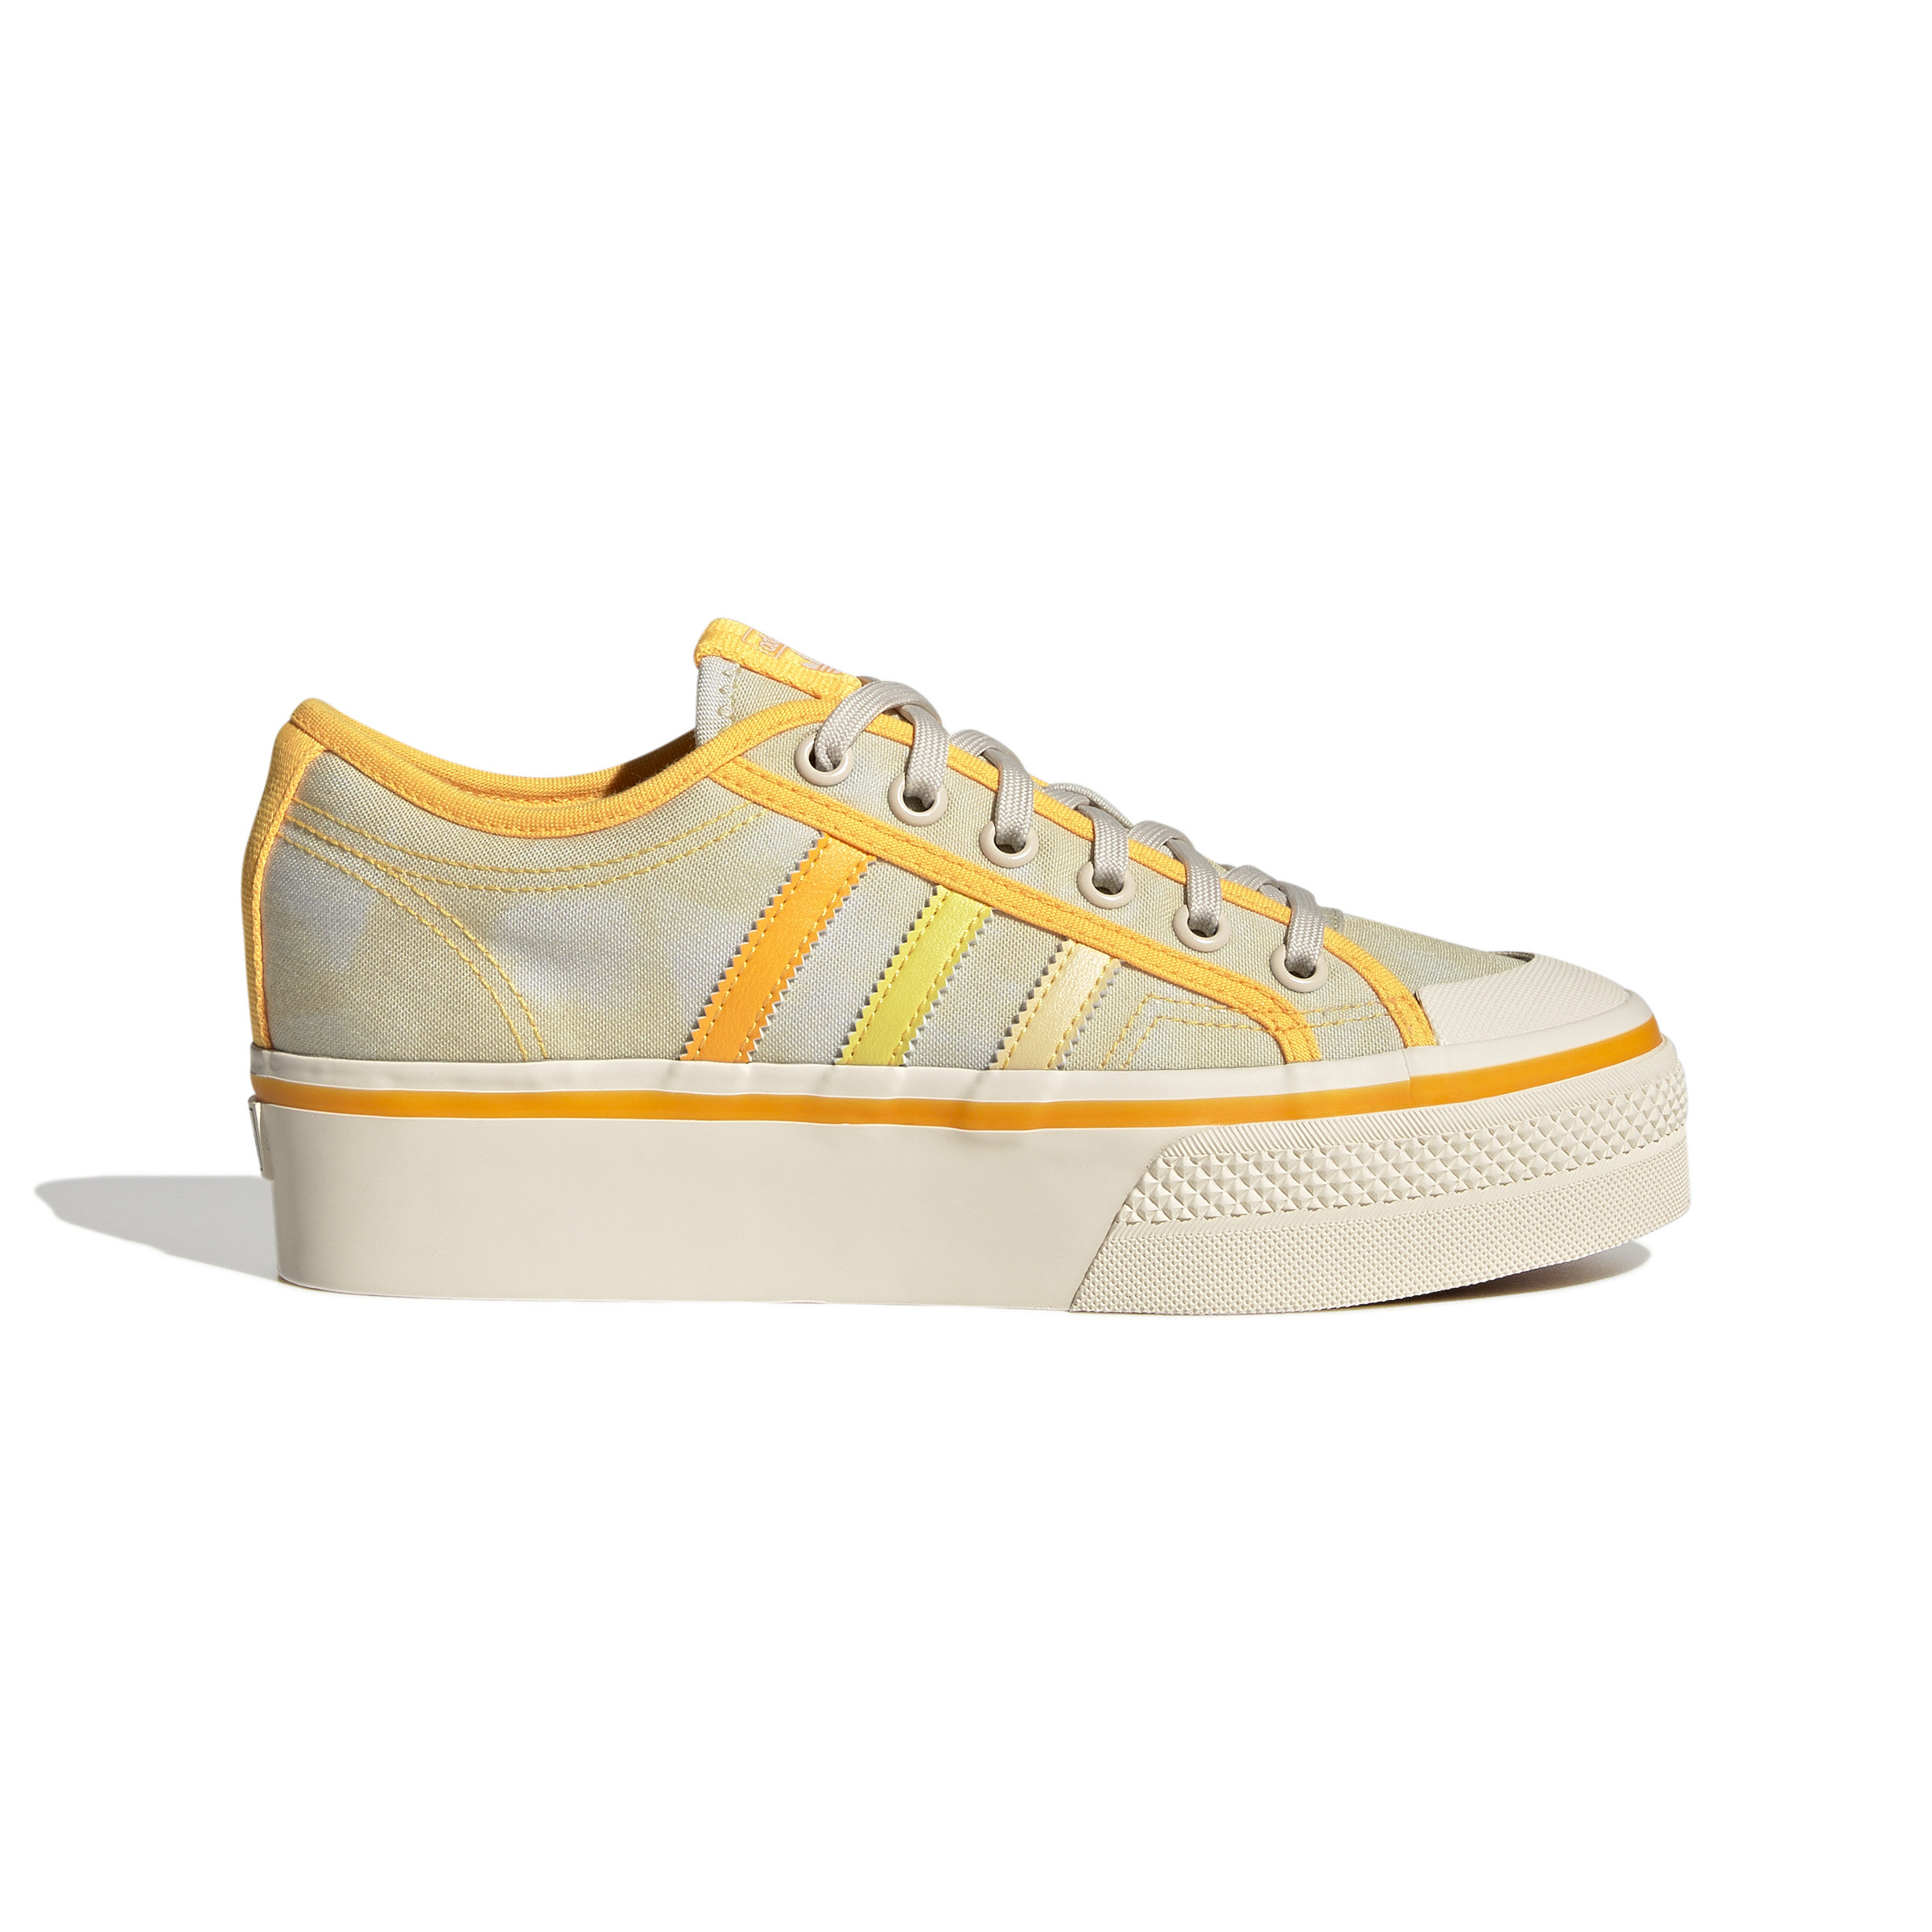 Adidas - Nizza Platform Shoes, Yellow, large image number 0